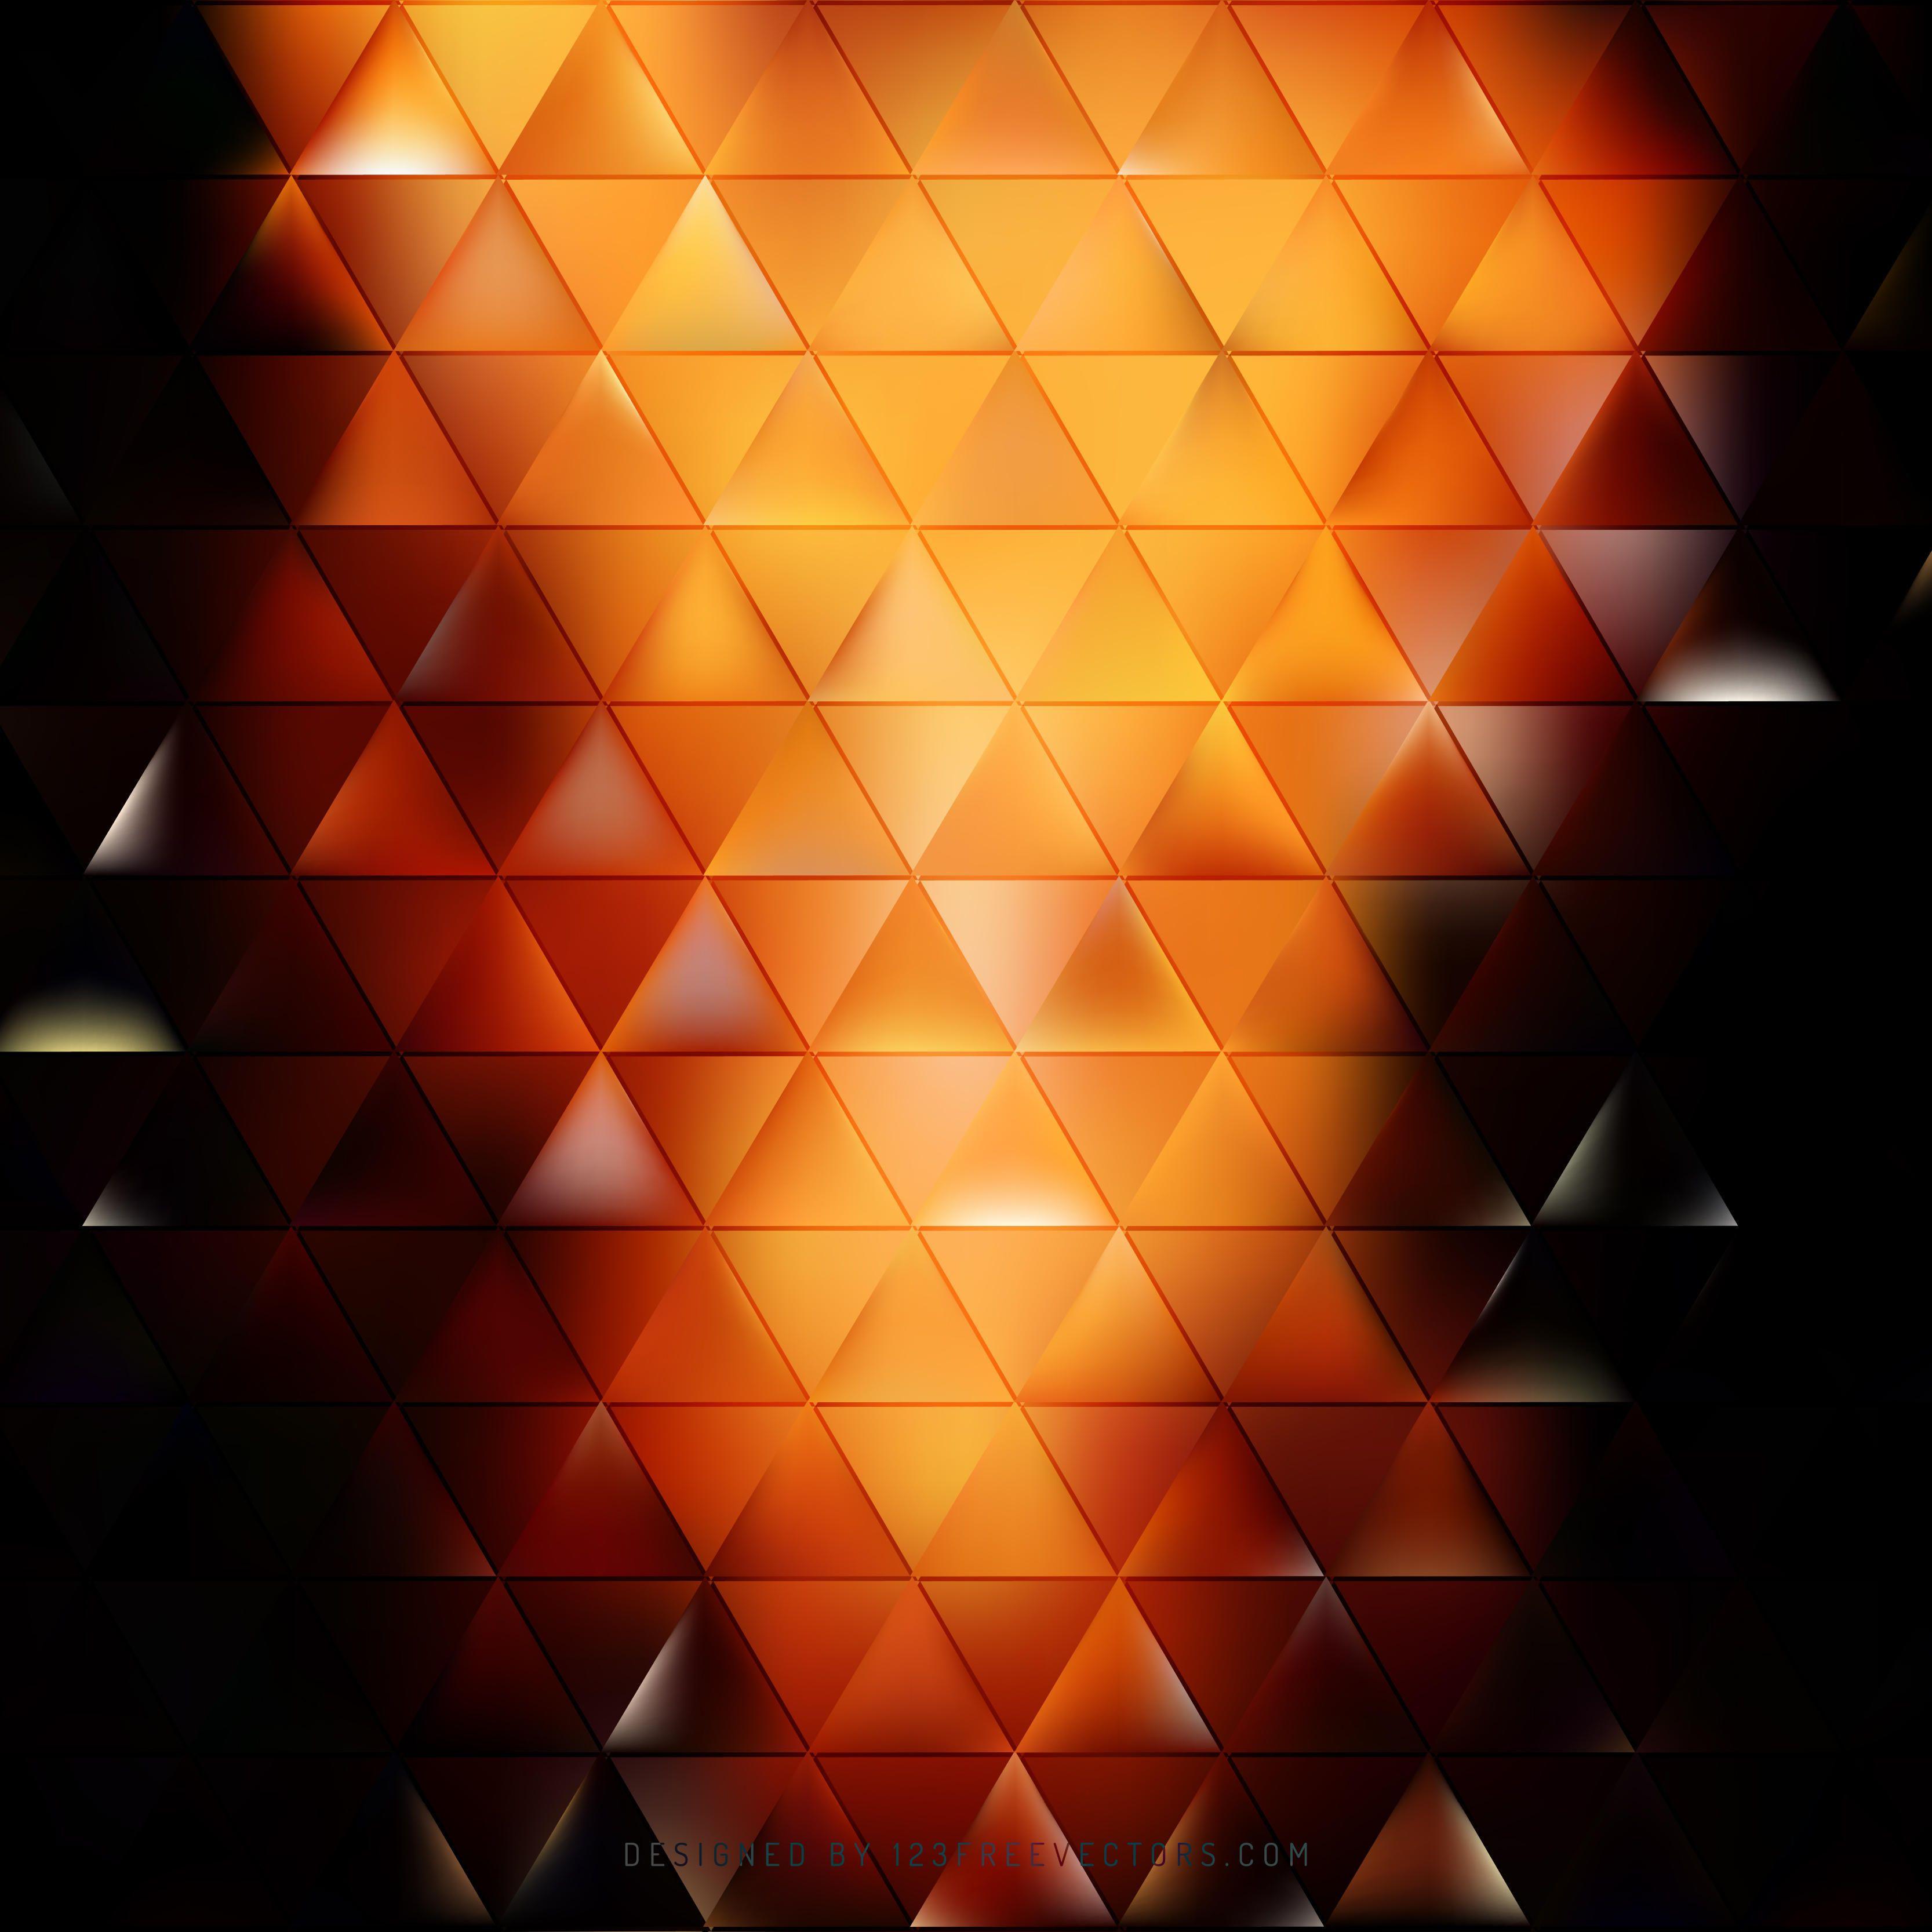 Black Orange Fire Triangle Background Clip ArtFreevectors